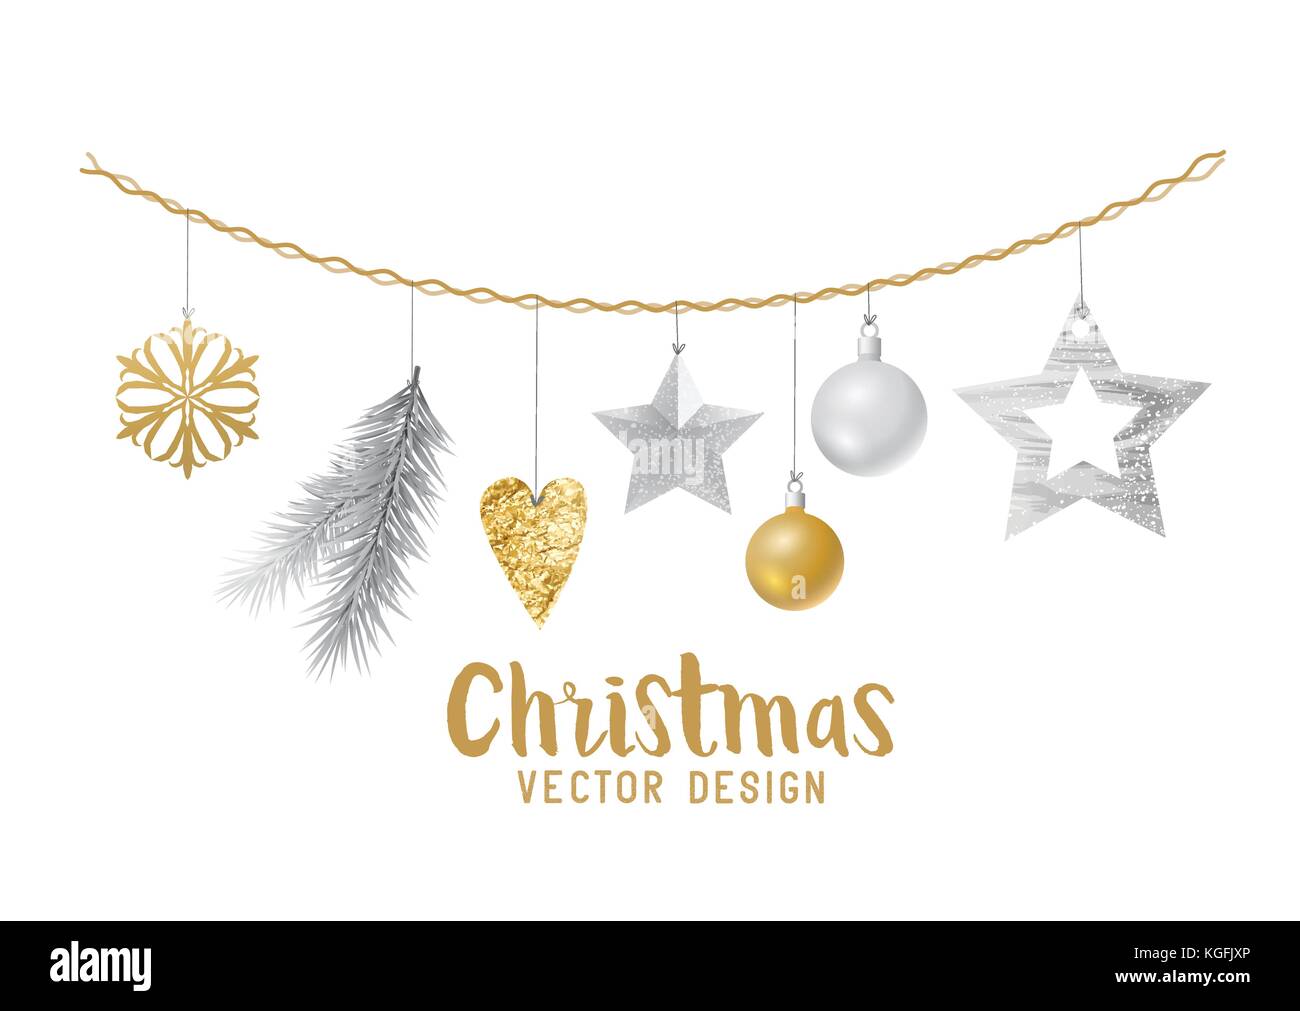 Hängende silber und gold Weihnachtsschmuck Zusammensetzung mit Fir Tree Branches, Holz- Sterne und xmas Flitter. Vector Illustration Stock Vektor